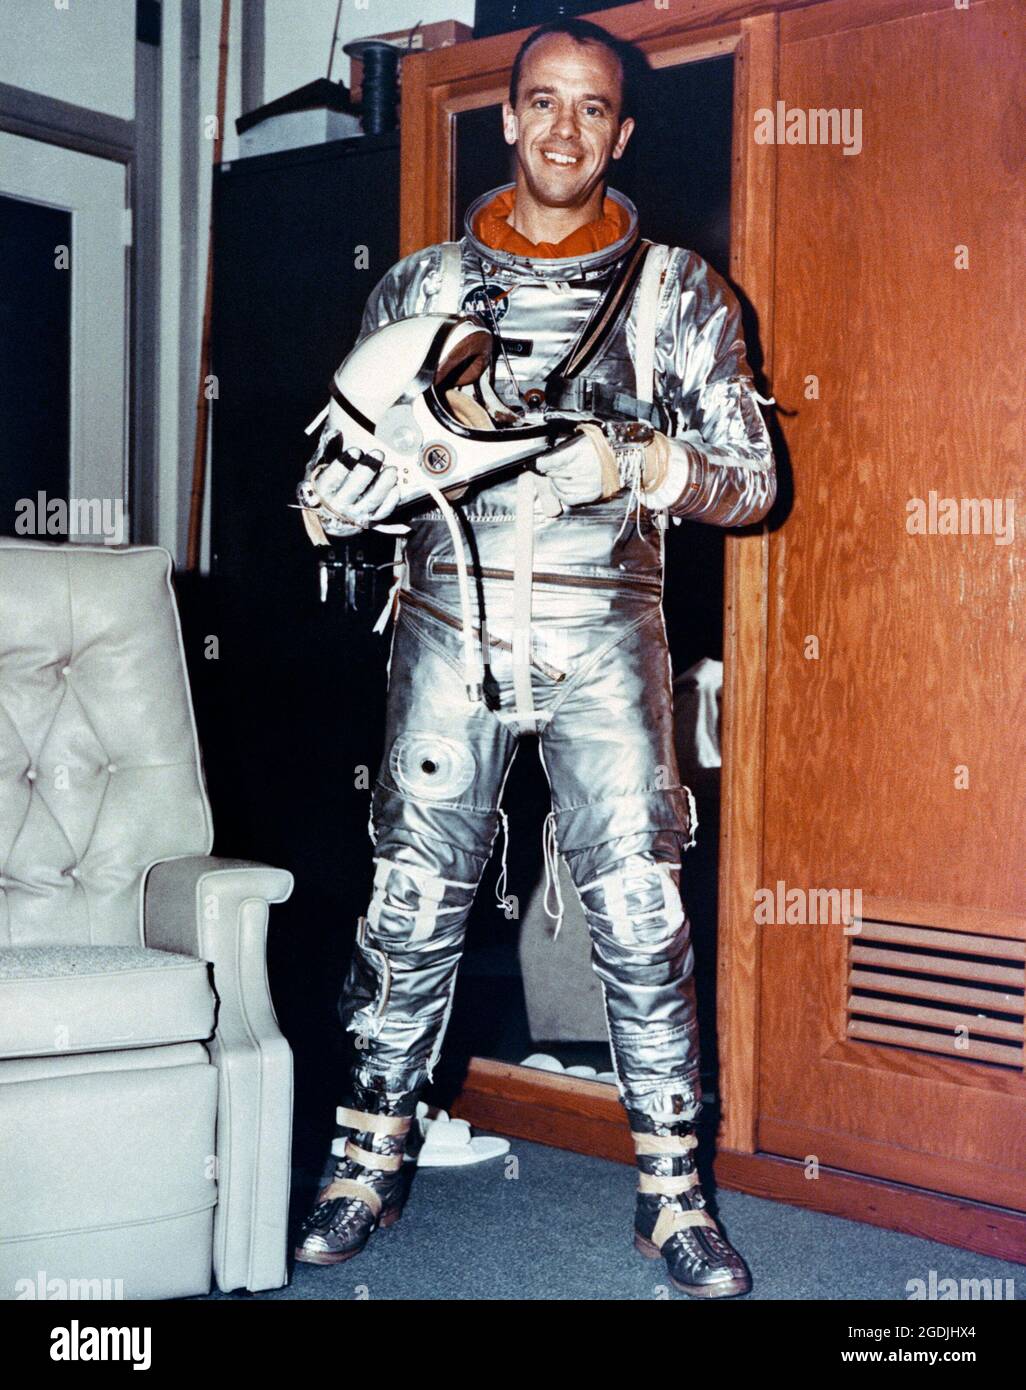 L'astronauta Alan Shepard, vestito nel suo spacesuit, prima del suo lancio in un veicolo spaziale Mercury-Redstone 3 (MR-3) da Cape Canaveral. Fu il primo americano nello spazio, 23 giorni dopo Yuri Gagarin, in missione Freedom 7. Foto Stock